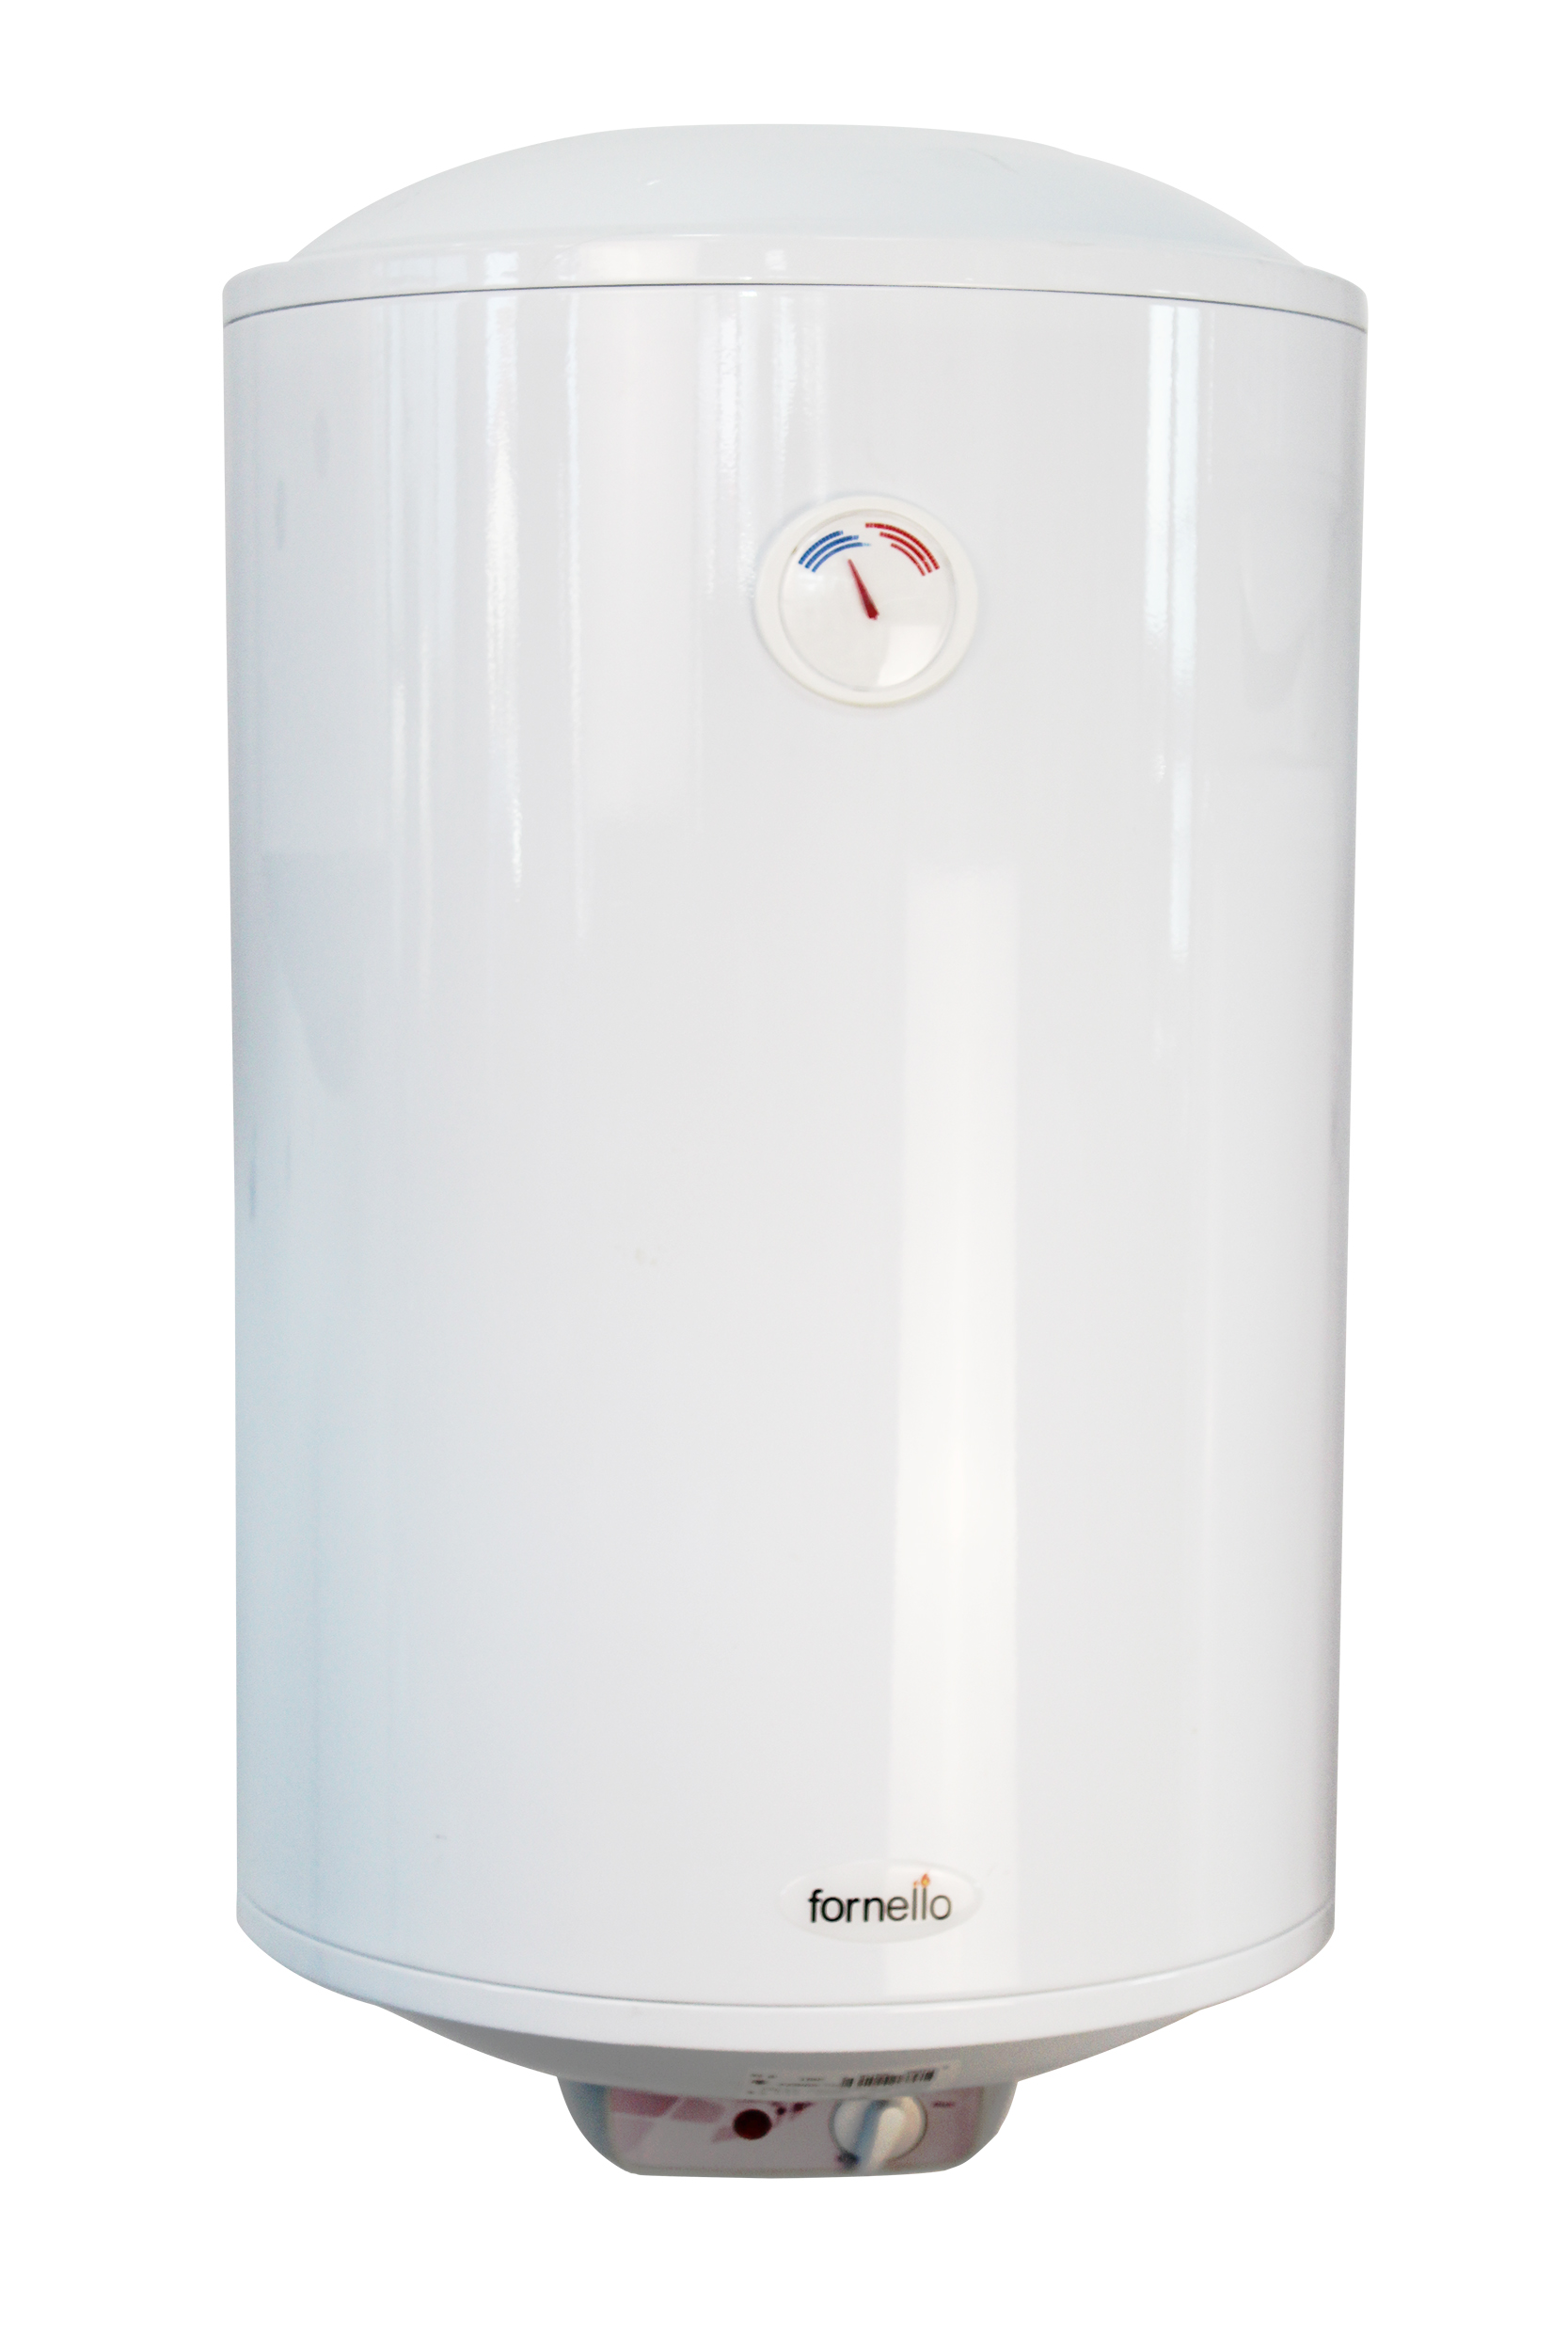 Boiler electric Fornello Titanium Plus 80 litri, 2000 watt, reglaj extern al temperaturii, emailat cu titan Fornello imagine 2022